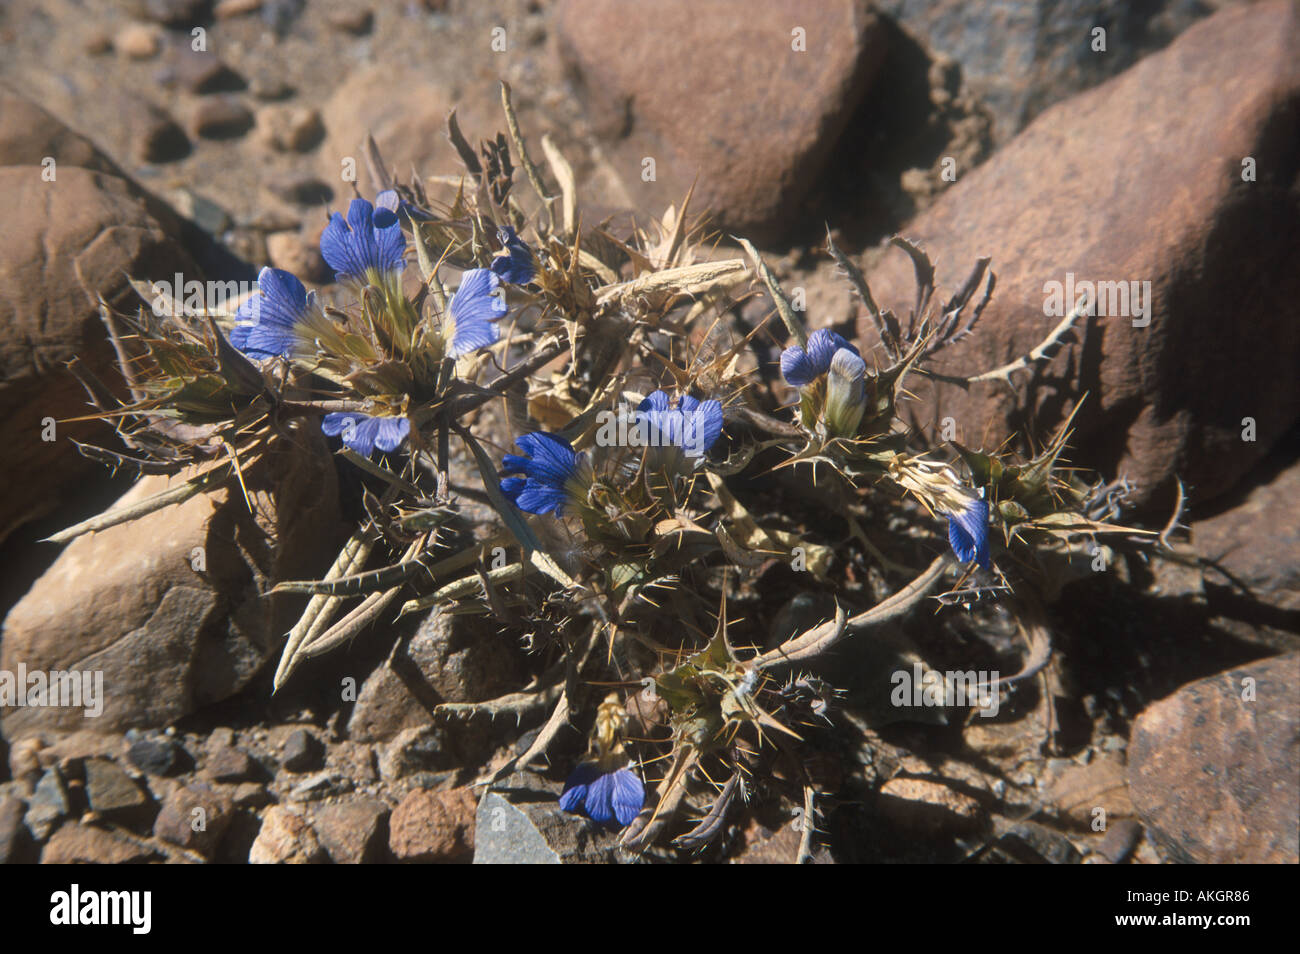 Perennial Herb Blepharis grossa Namib Desert Namibia Stock Photo